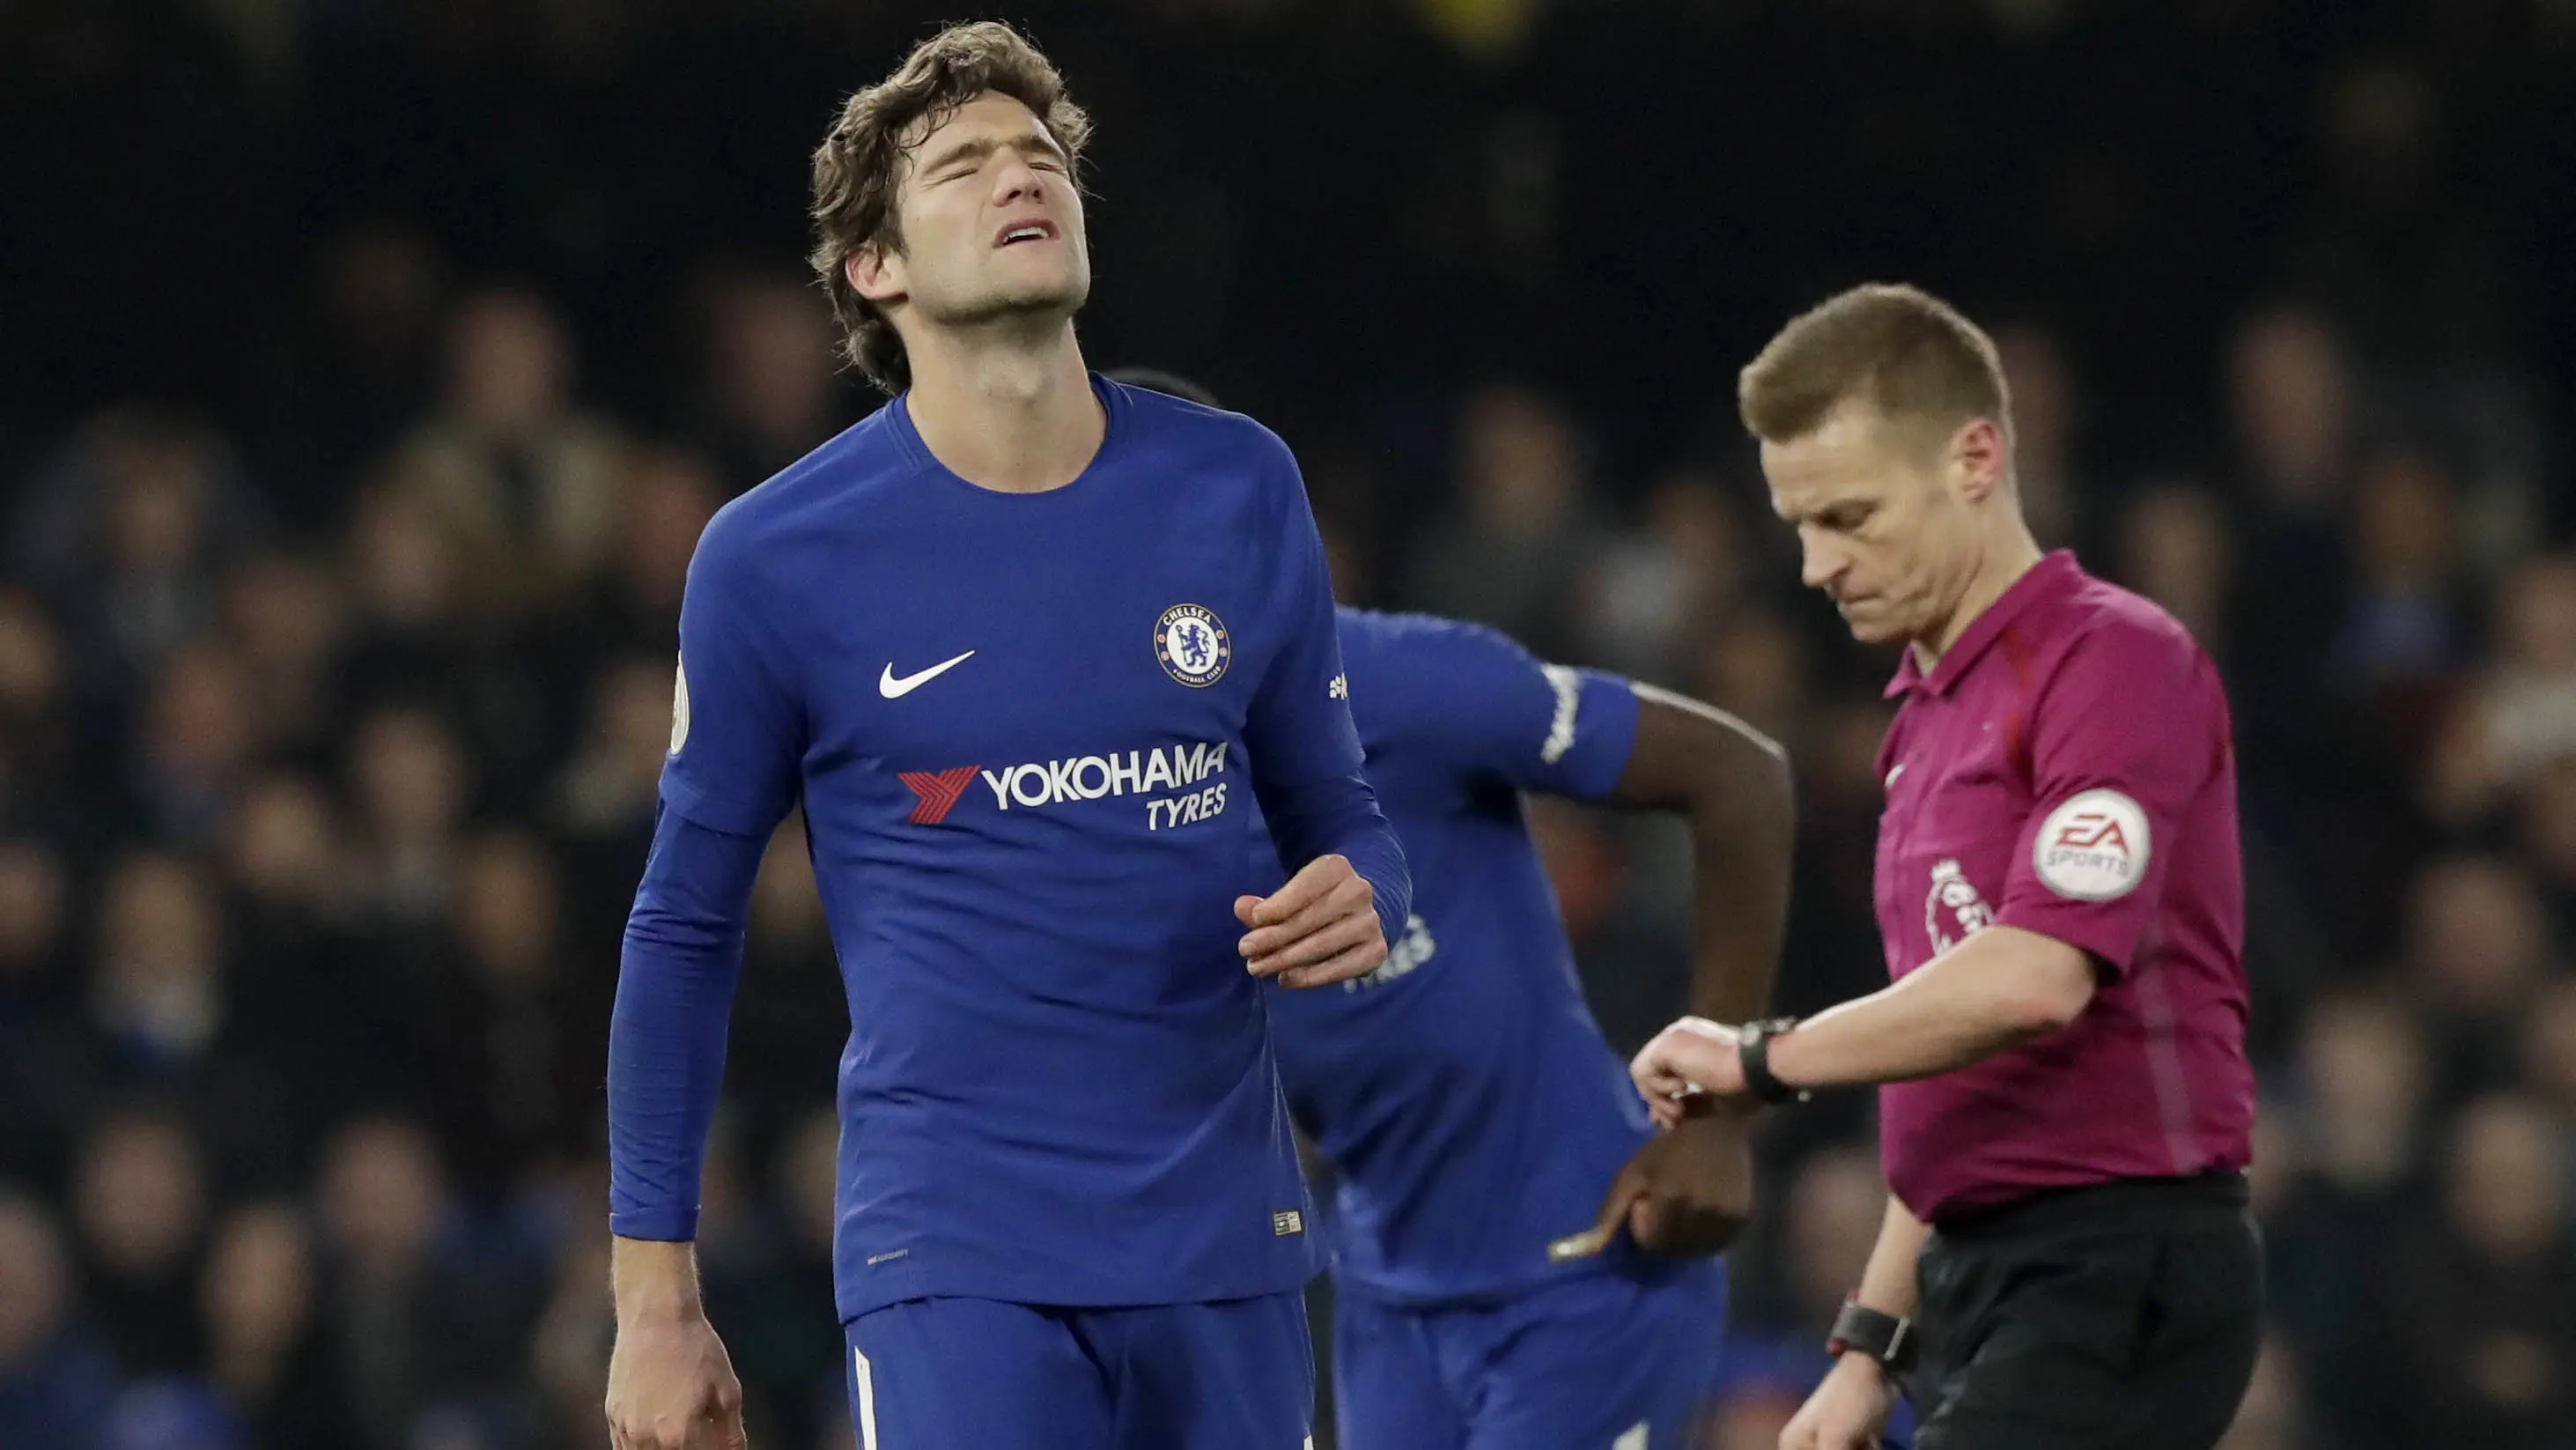 Bek Chelsea, Marcos Alonso, kecewa usai ditahan imbang Leicester City pada laga Premier League di Stamford Bridge Sabtu (13/1/2018). Kedua tim bermain imbang 0-0. (AP/Matt Dunham)